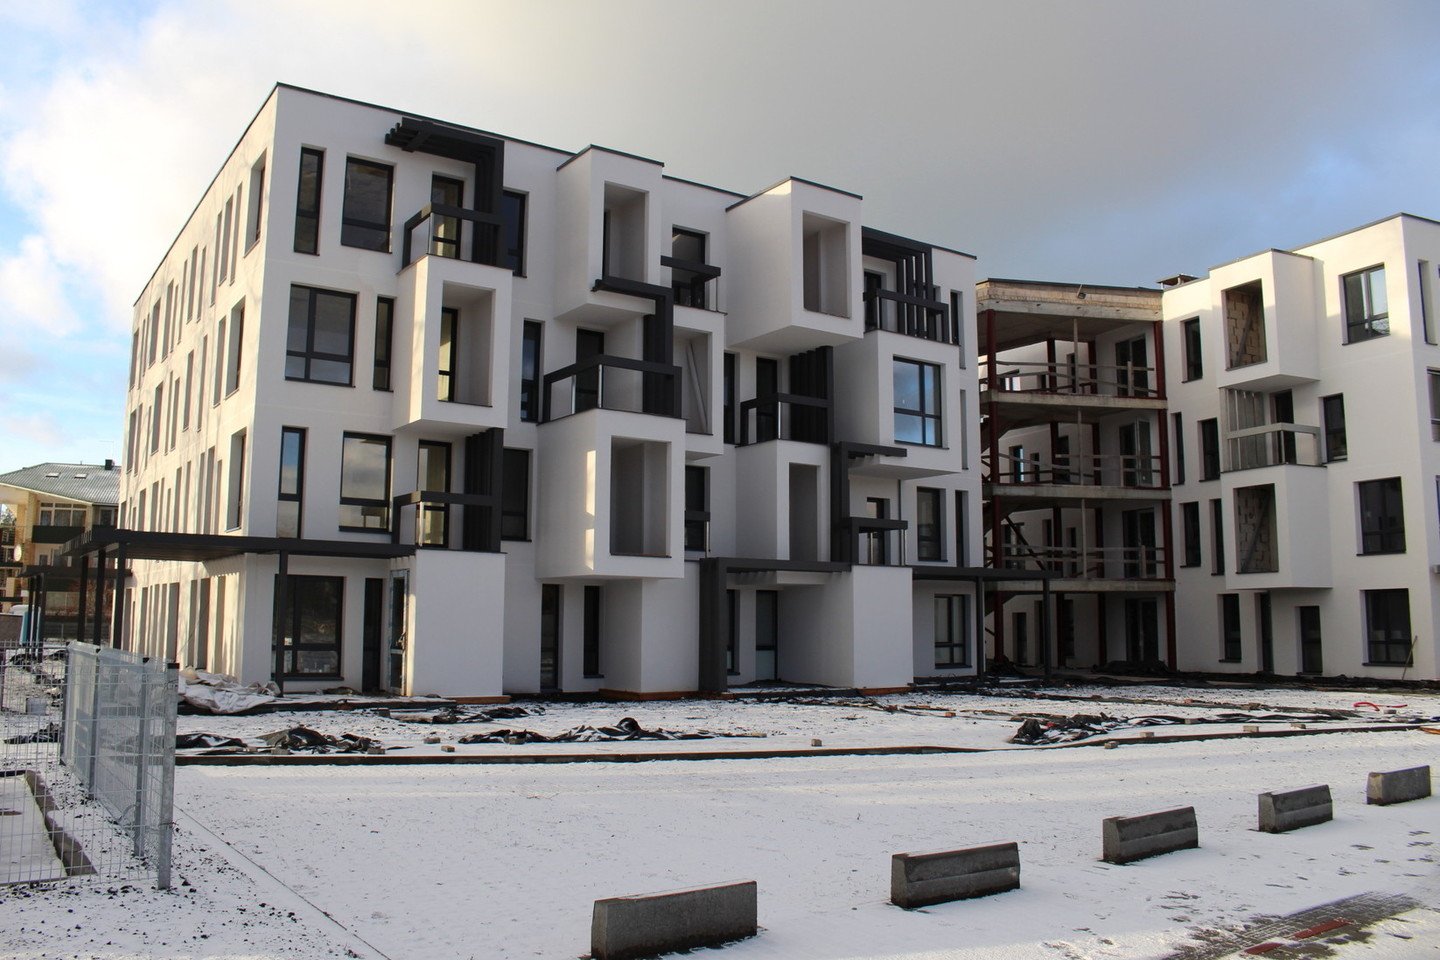 Daugiabučiai kvartale „Apartamentai kopose“ dar nebaigtas, tačiau pusė butų jau yra rezervuoti arba nupirkti.<br>E.Kazlaučiūnaitės nuotr.